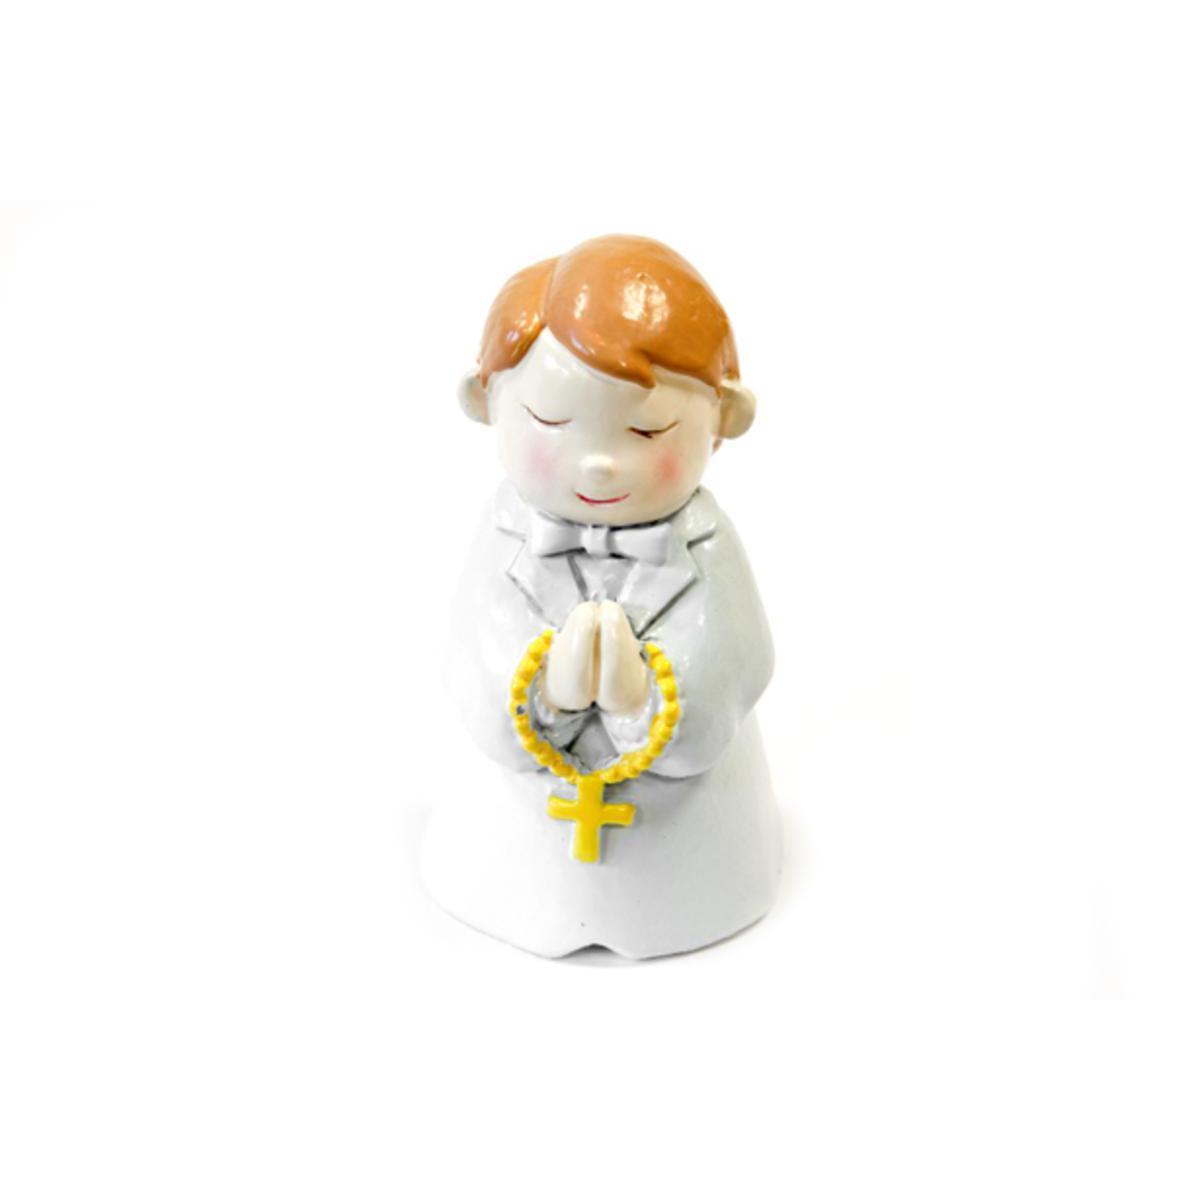 Figurine communiant - Résine - 4 x 3,8 x 6,5 cm - Blanc